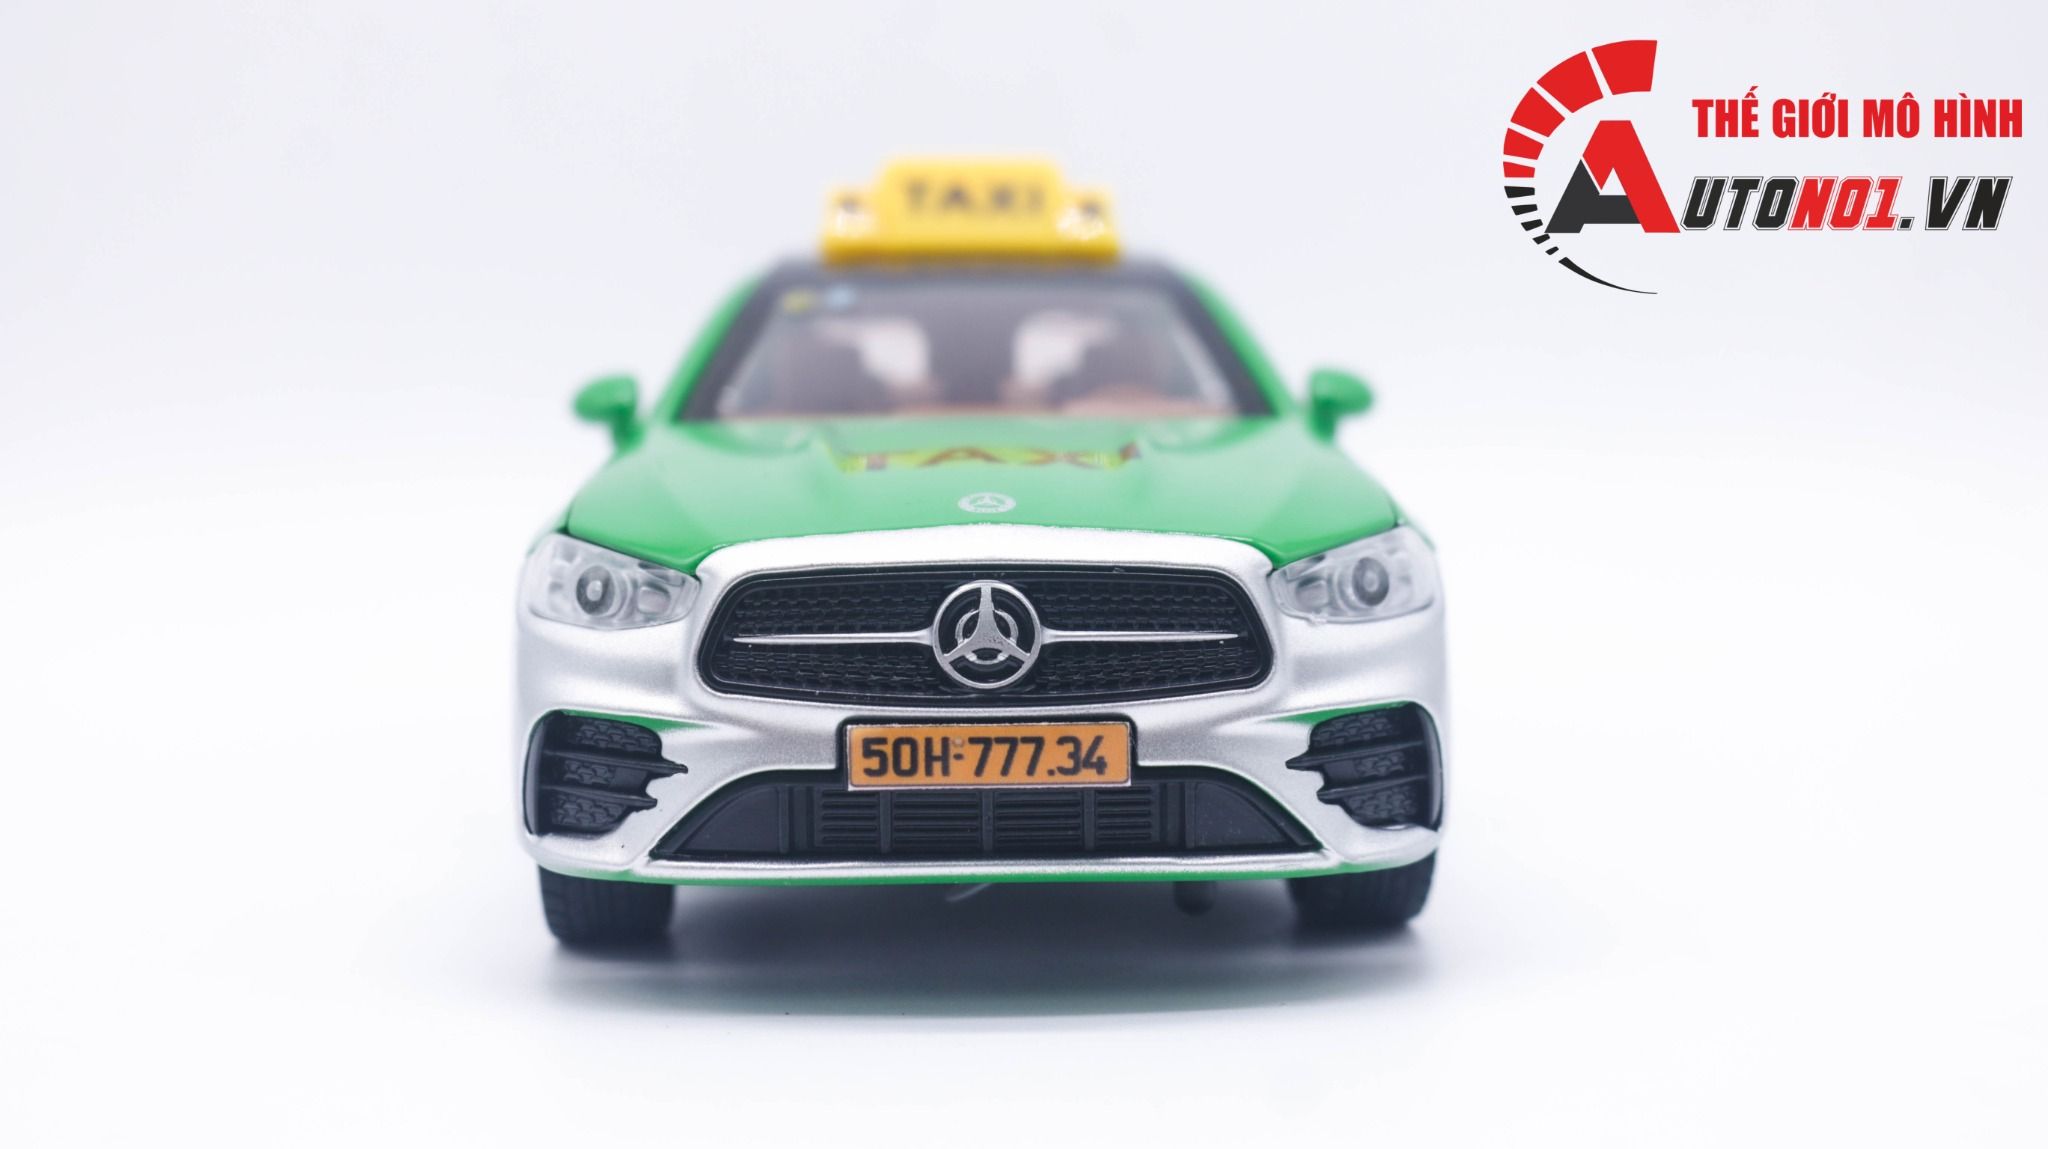  Mô hình xe độ dịch vụ Mercedes-Benz E300L độ Taxi Grab tỉ lệ 1:24 XHD Autono1 OT431 